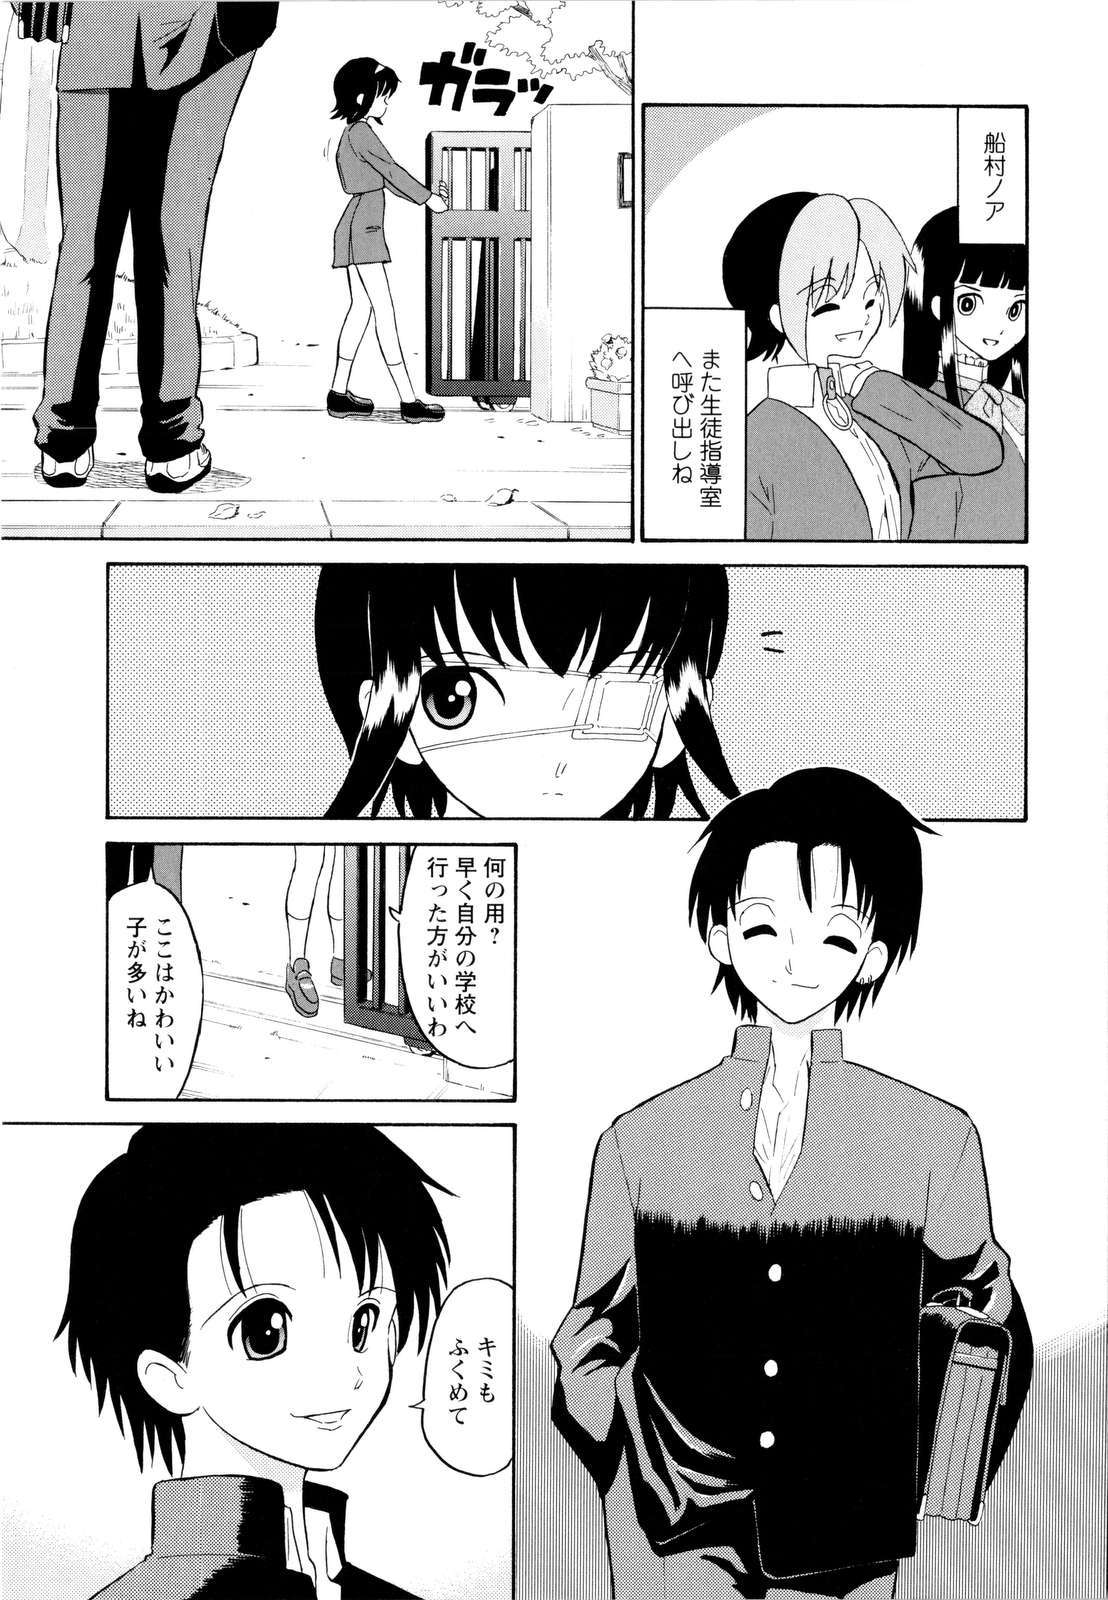 [Dozamura] Haruka 69 Vol.2 page 12 full